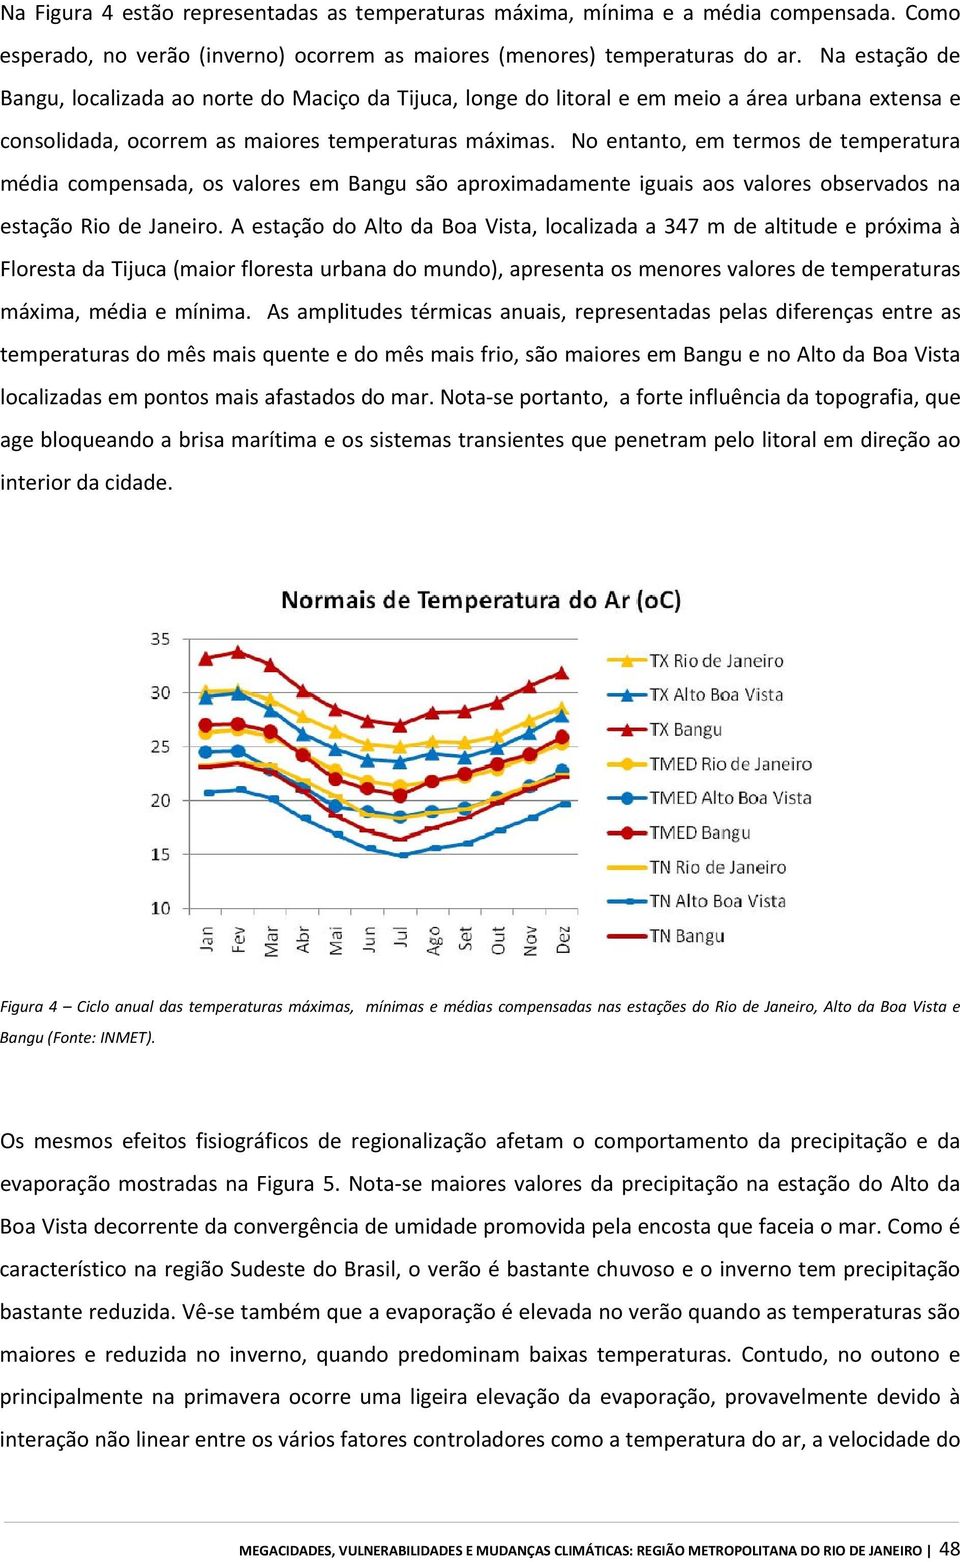 No entanto, em termos de temperatura média compensada, os valores em Bangu são aproximadamente iguais aos valores observados na estação Rio de Janeiro.